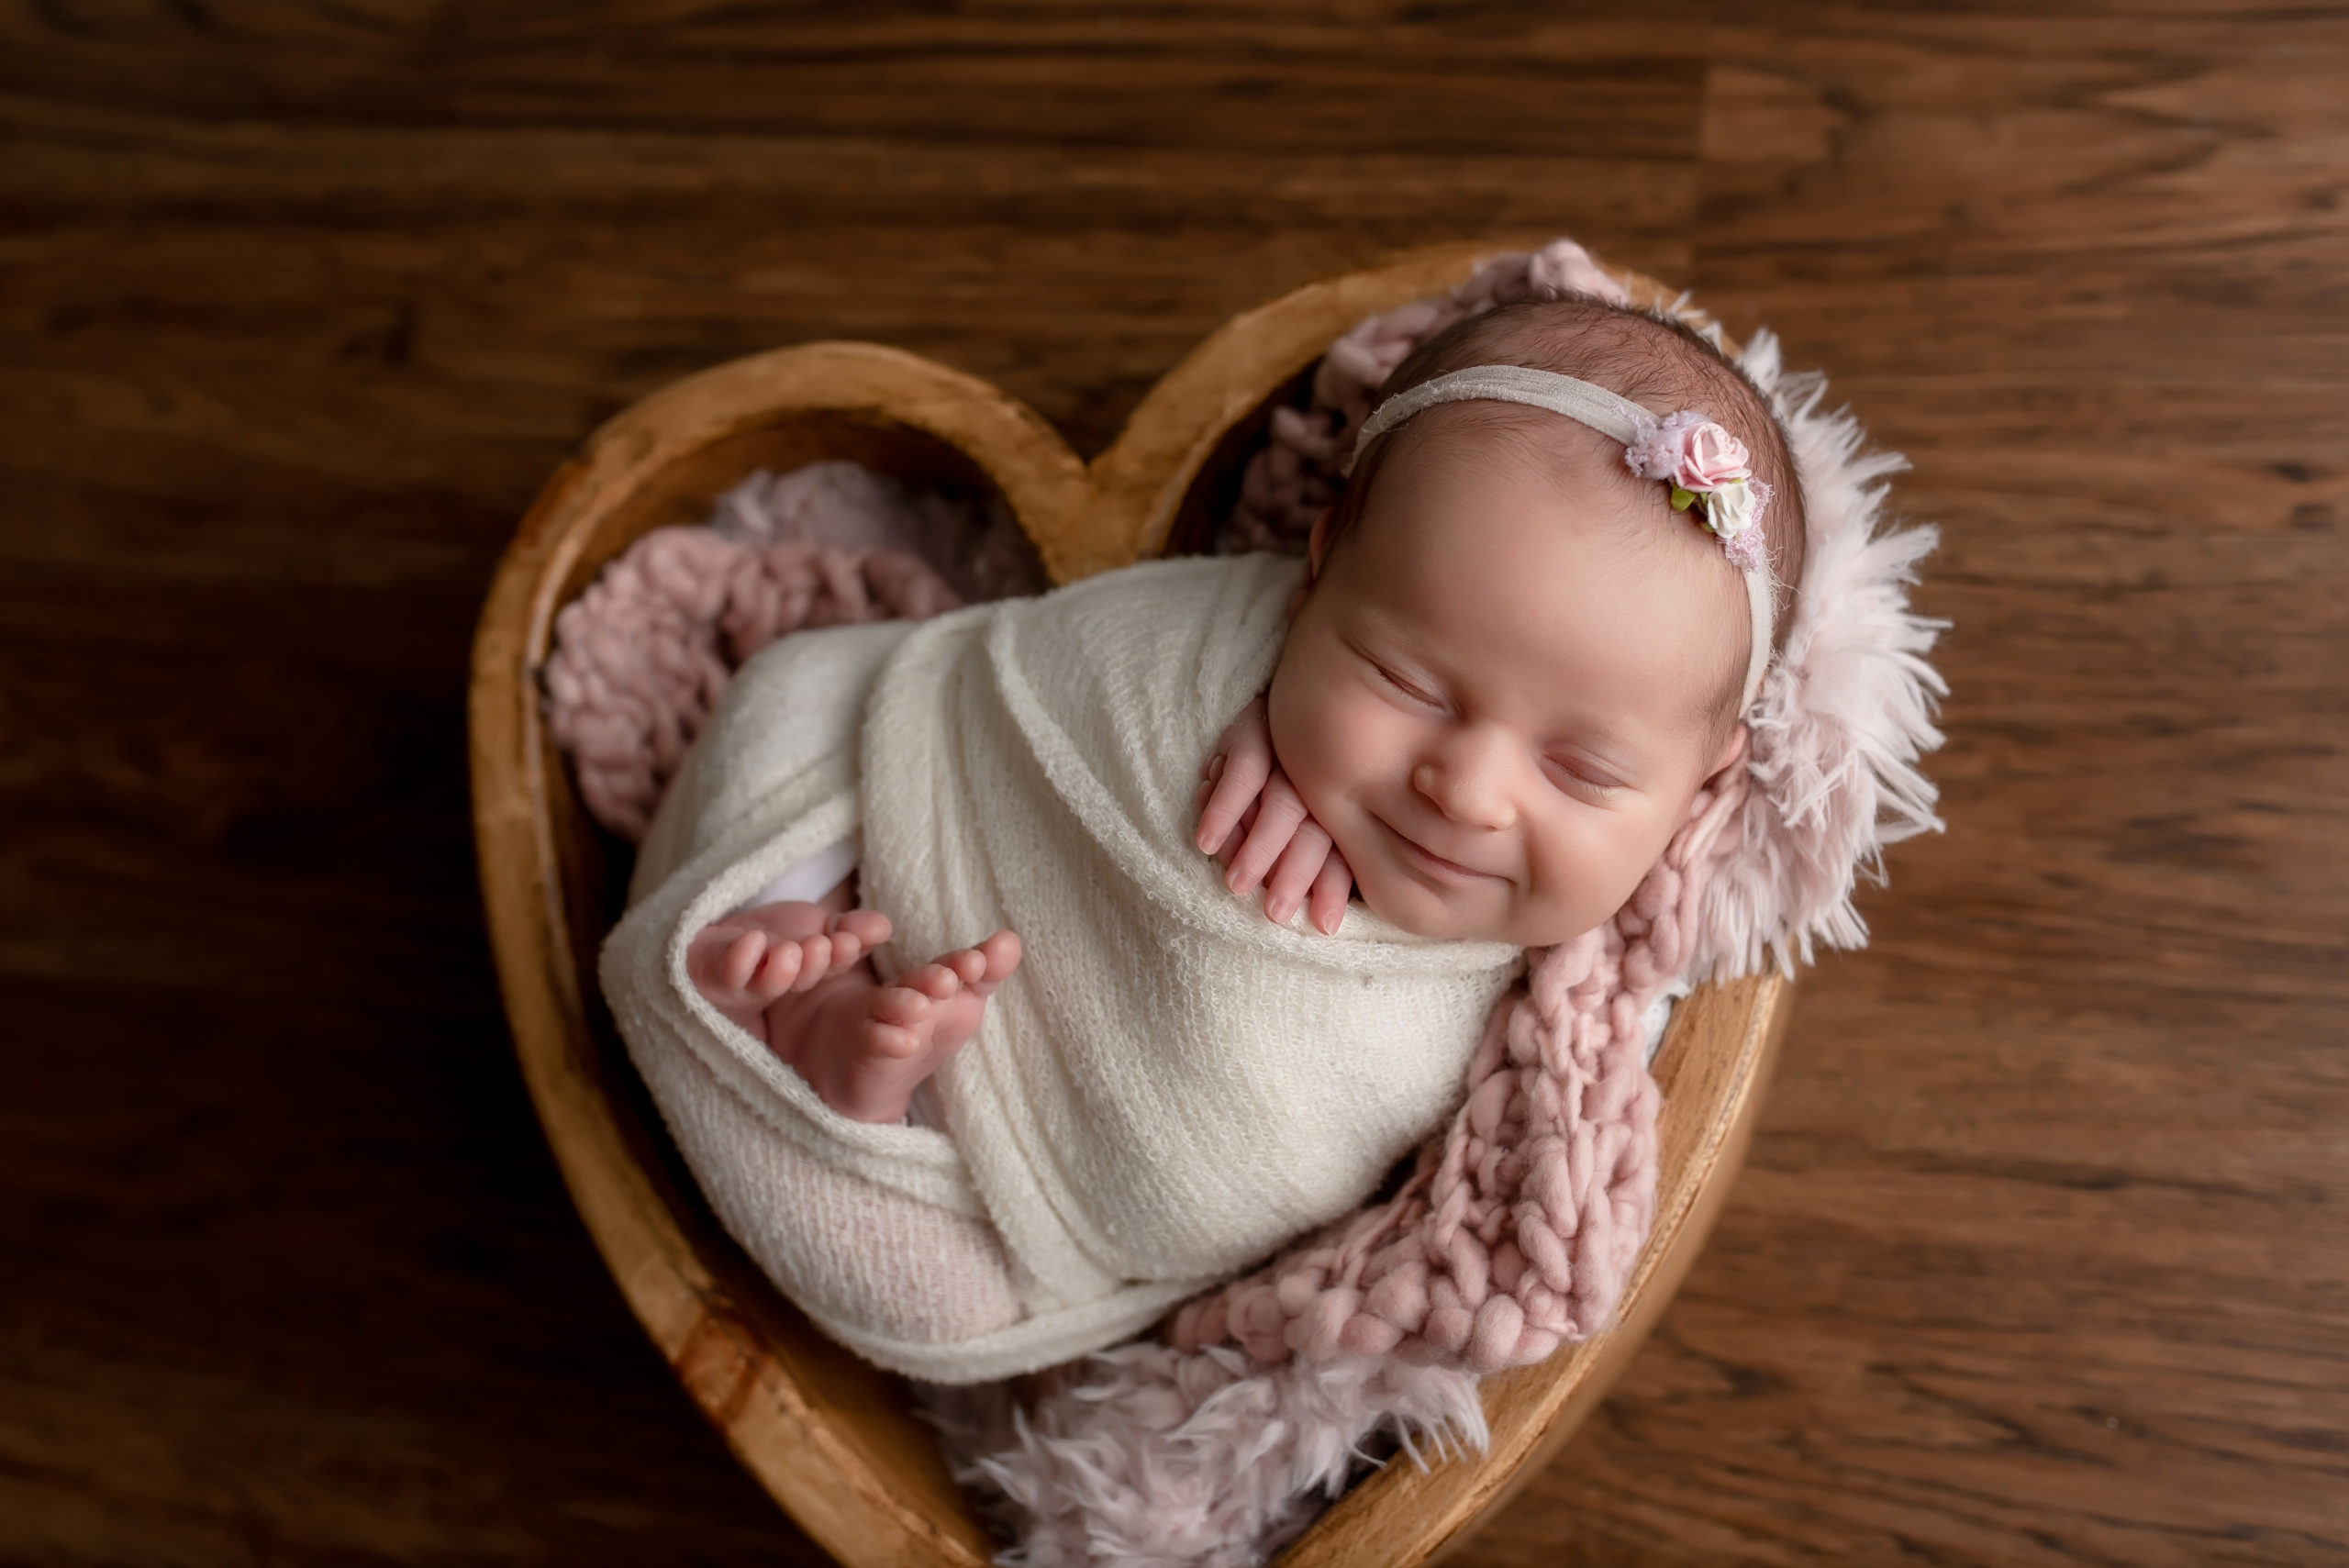 Newborn girl smiling